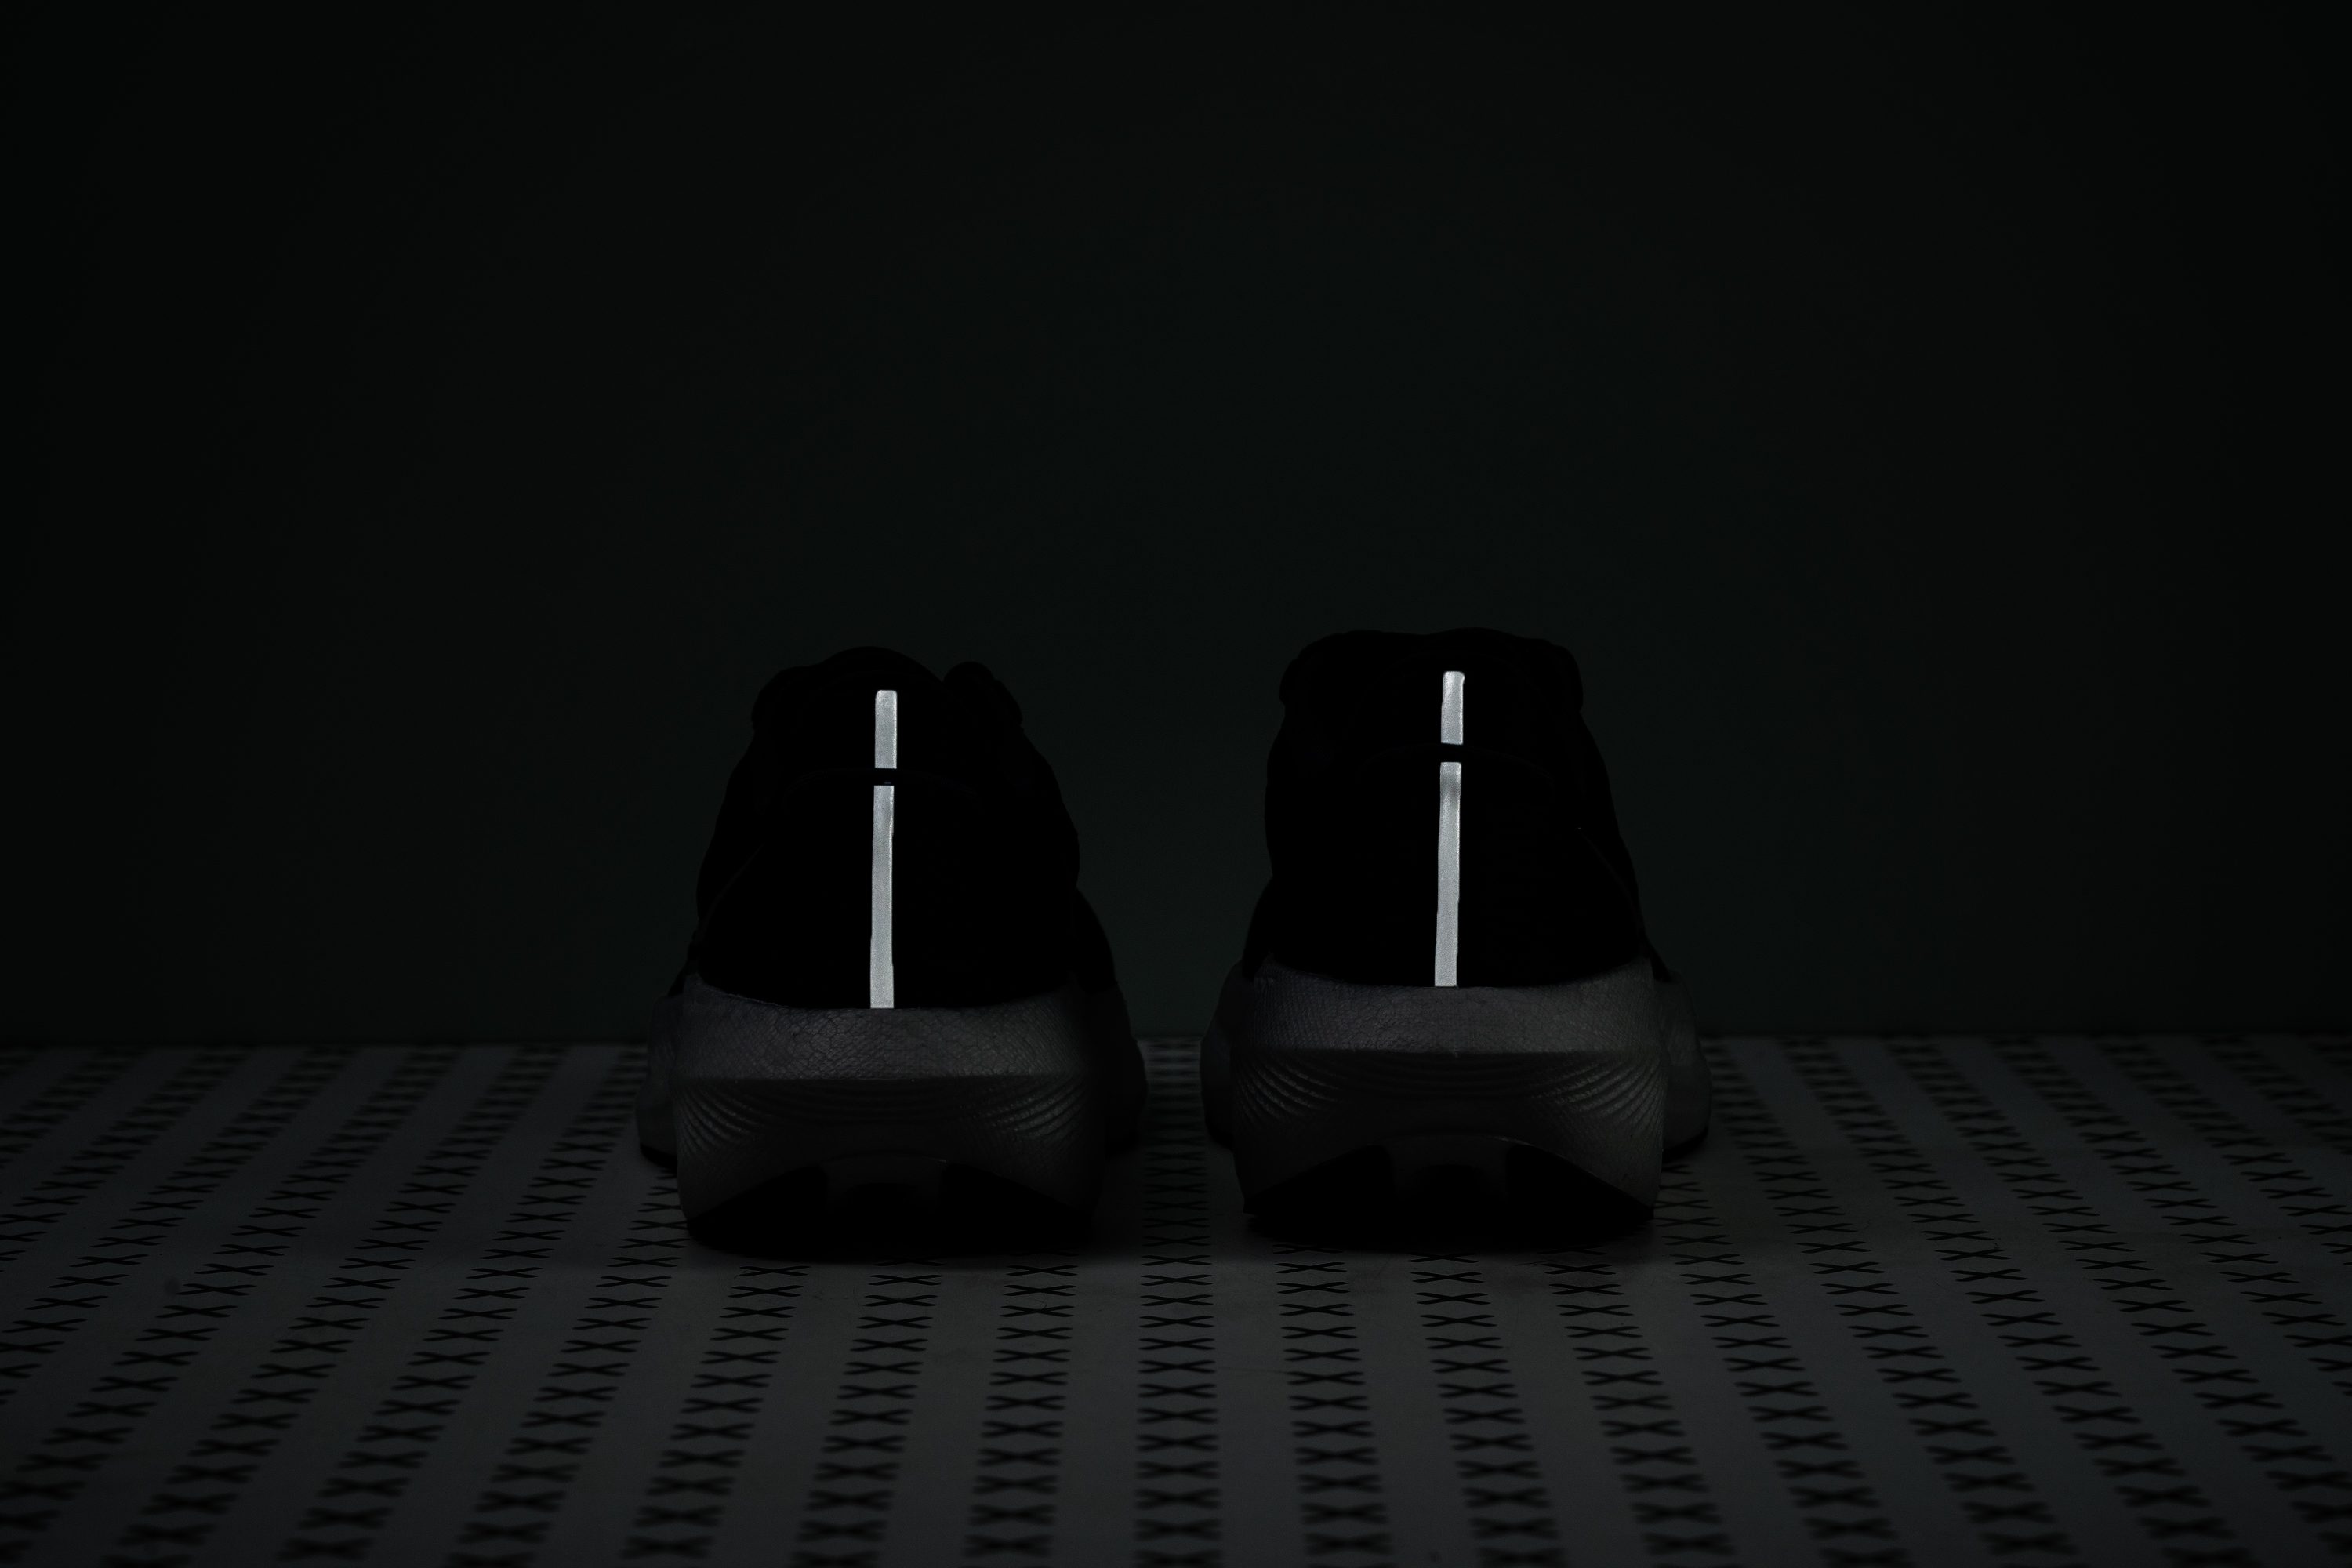 zapatillas de running minimalistas saucony asfalto pie normal más de 100 Reflective elements